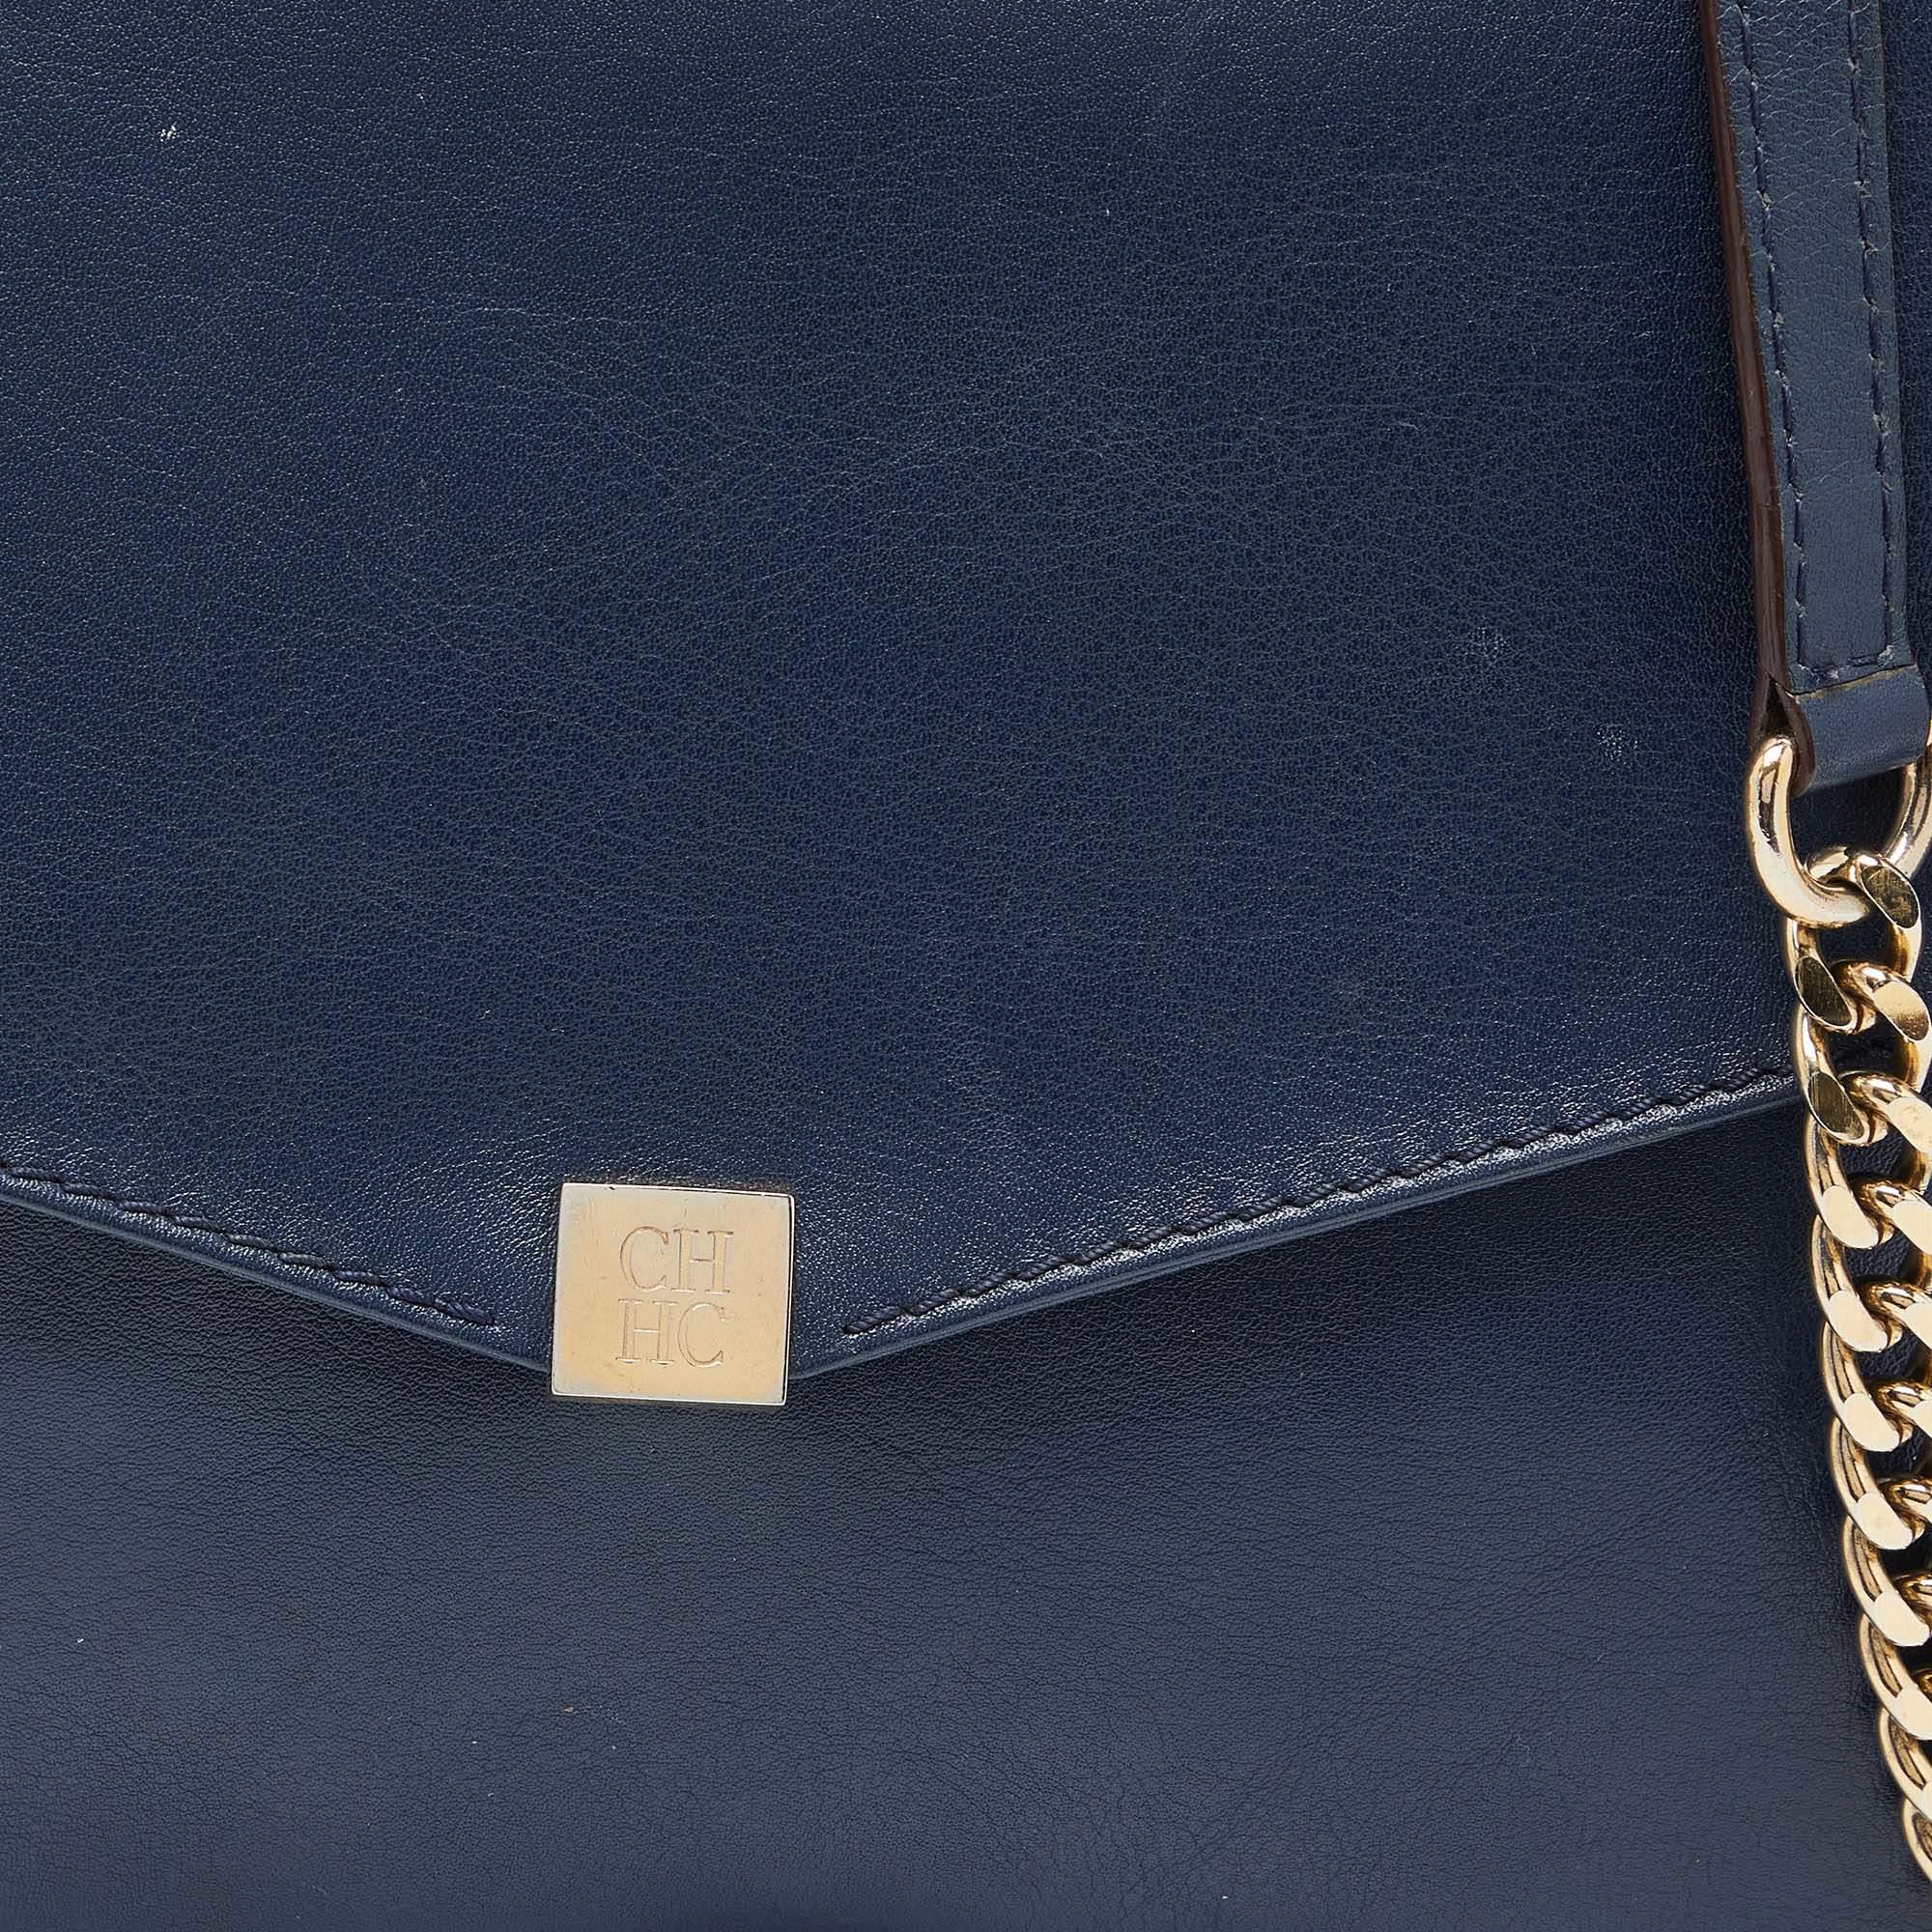 Carolina Herrera Navy Blue Leather Envelope Chain Shoulder Bag For Sale 3